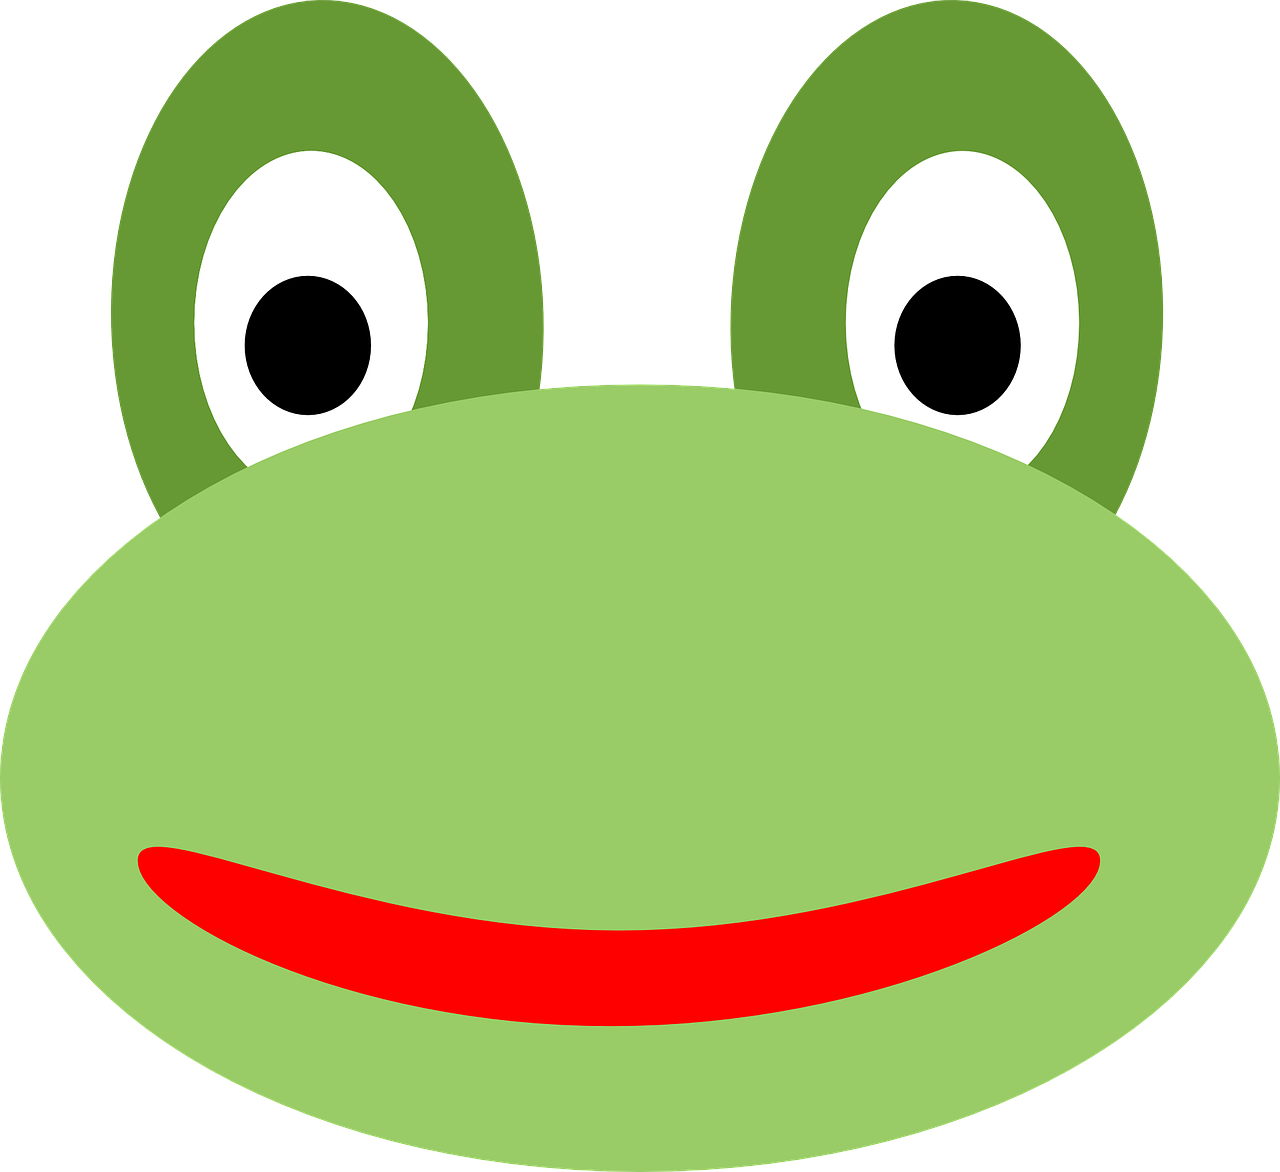 Frog,żabka,free Vector Graphics - Frog,żabka,free Vector Graphics (1280x1172)